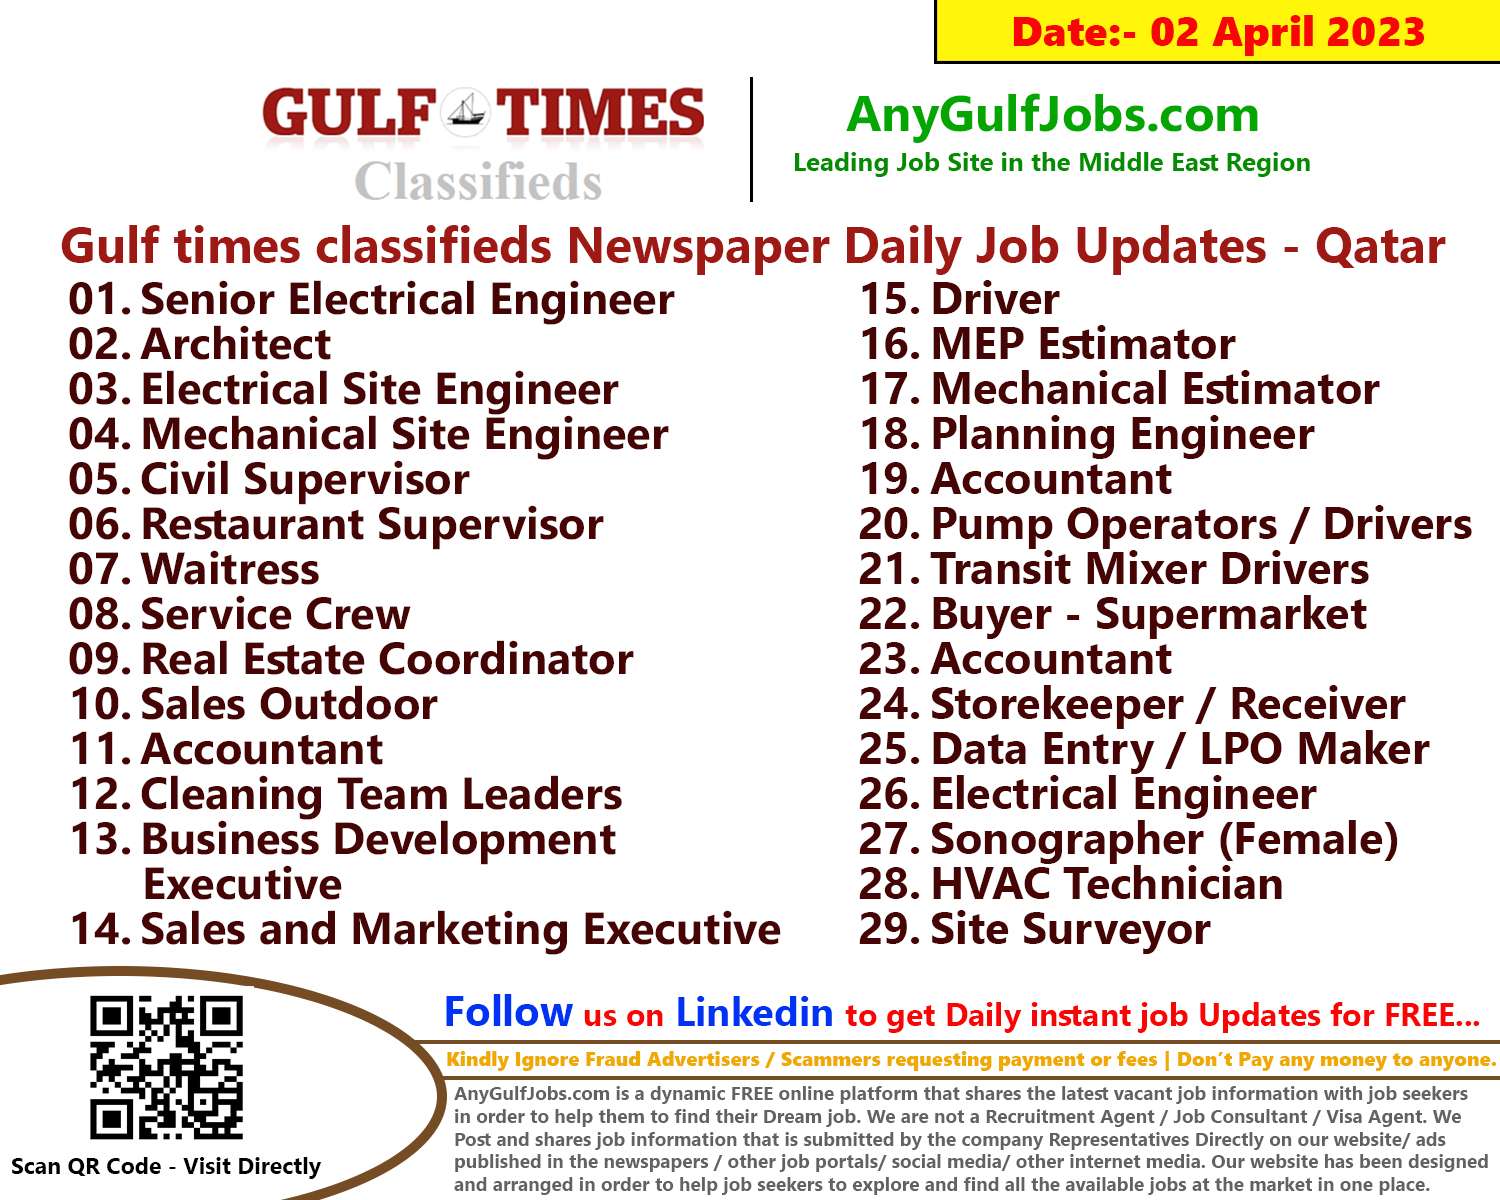 Gulf times classifieds Job Vacancies Qatar - 02 April 2023